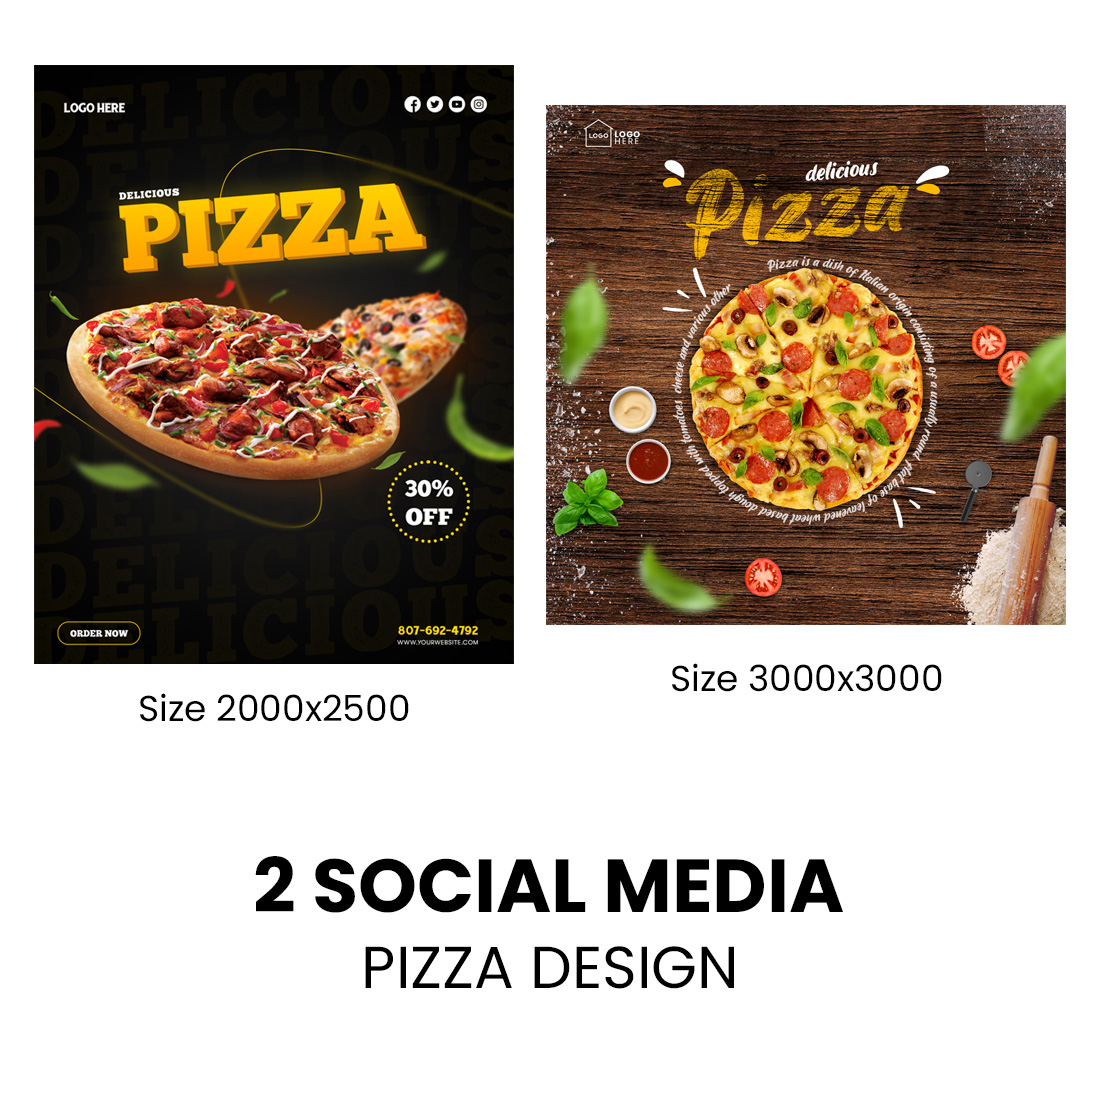 Social Media Pizza Design cover image.